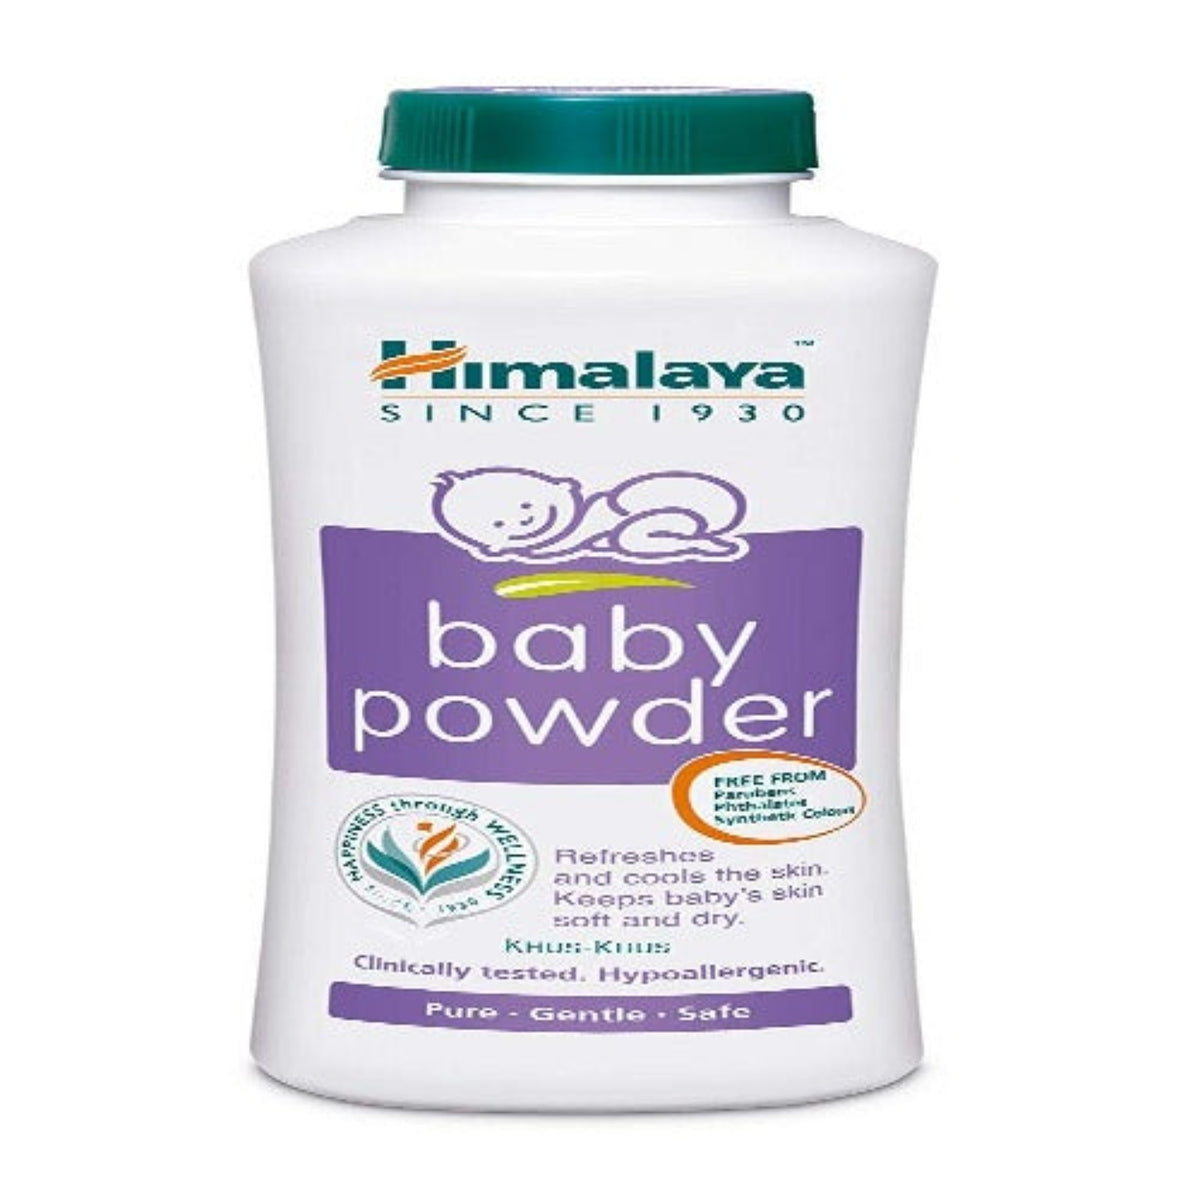 Himalaya Herbal Ayurvedic Baby Care, um kühl und frisch zu bleiben, Pulver